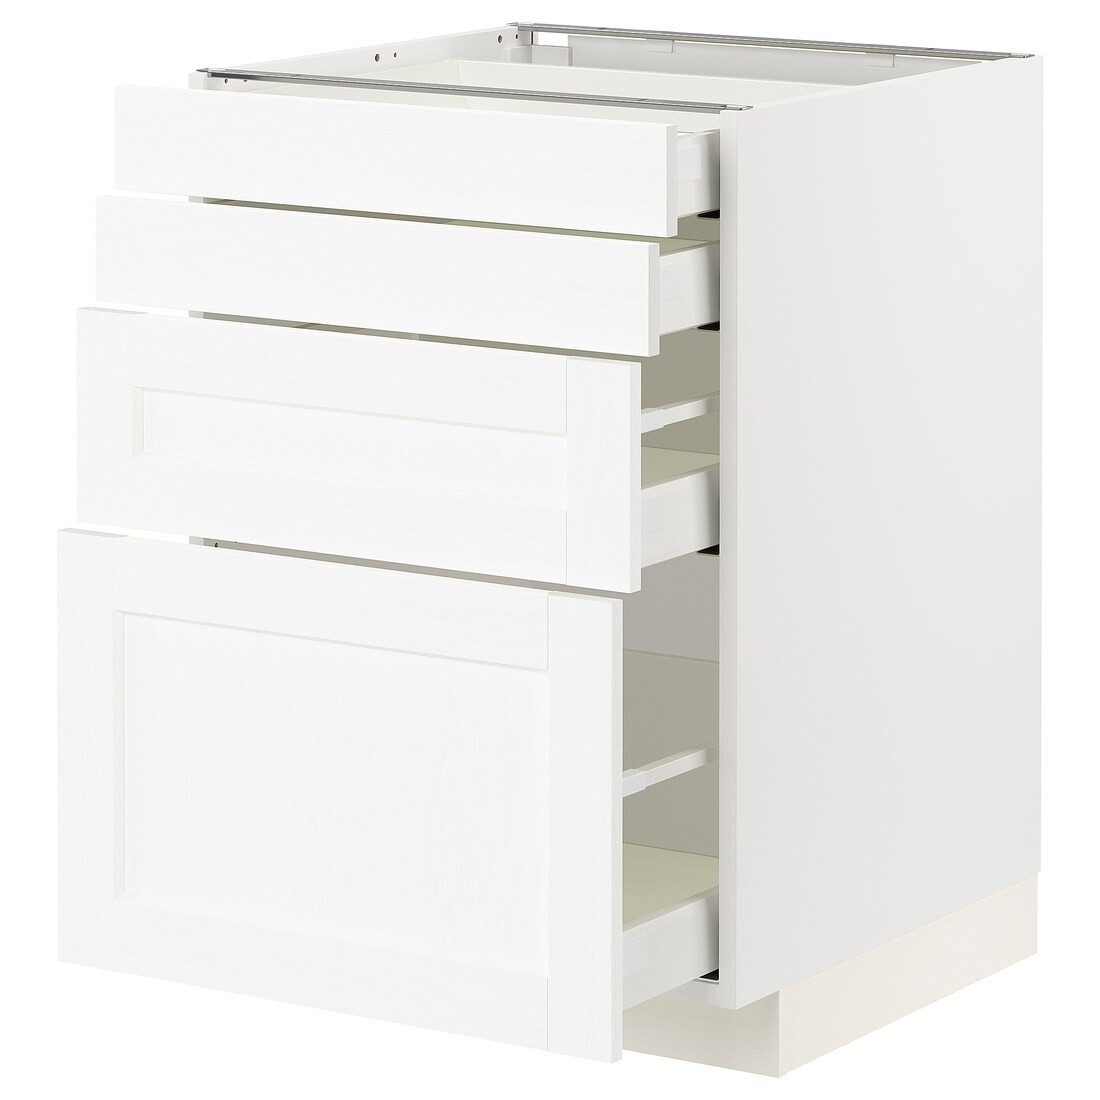 IKEA METOD МЕТОД / MAXIMERA МАКСИМЕРА Напольный шкаф 4 ящика, белый Enköping / белый имитация дерева, 60x60 см 89473430 894.734.30